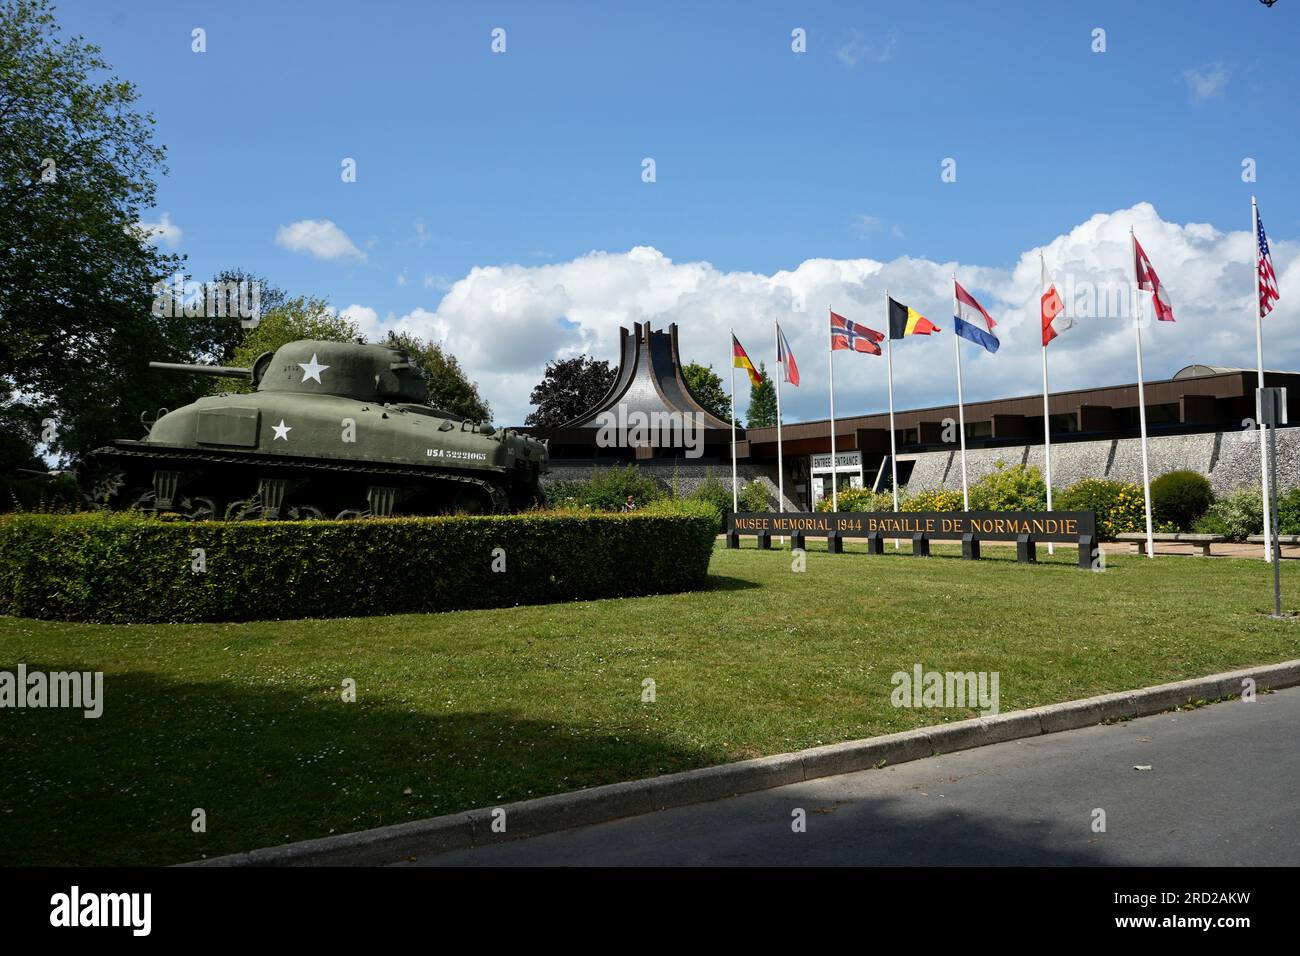 Carro armato americano della seconda Guerra Mondiale esposto all'esterno al Museo della Battaglia di Normandia, Bayeux, Francia. Foto Stock